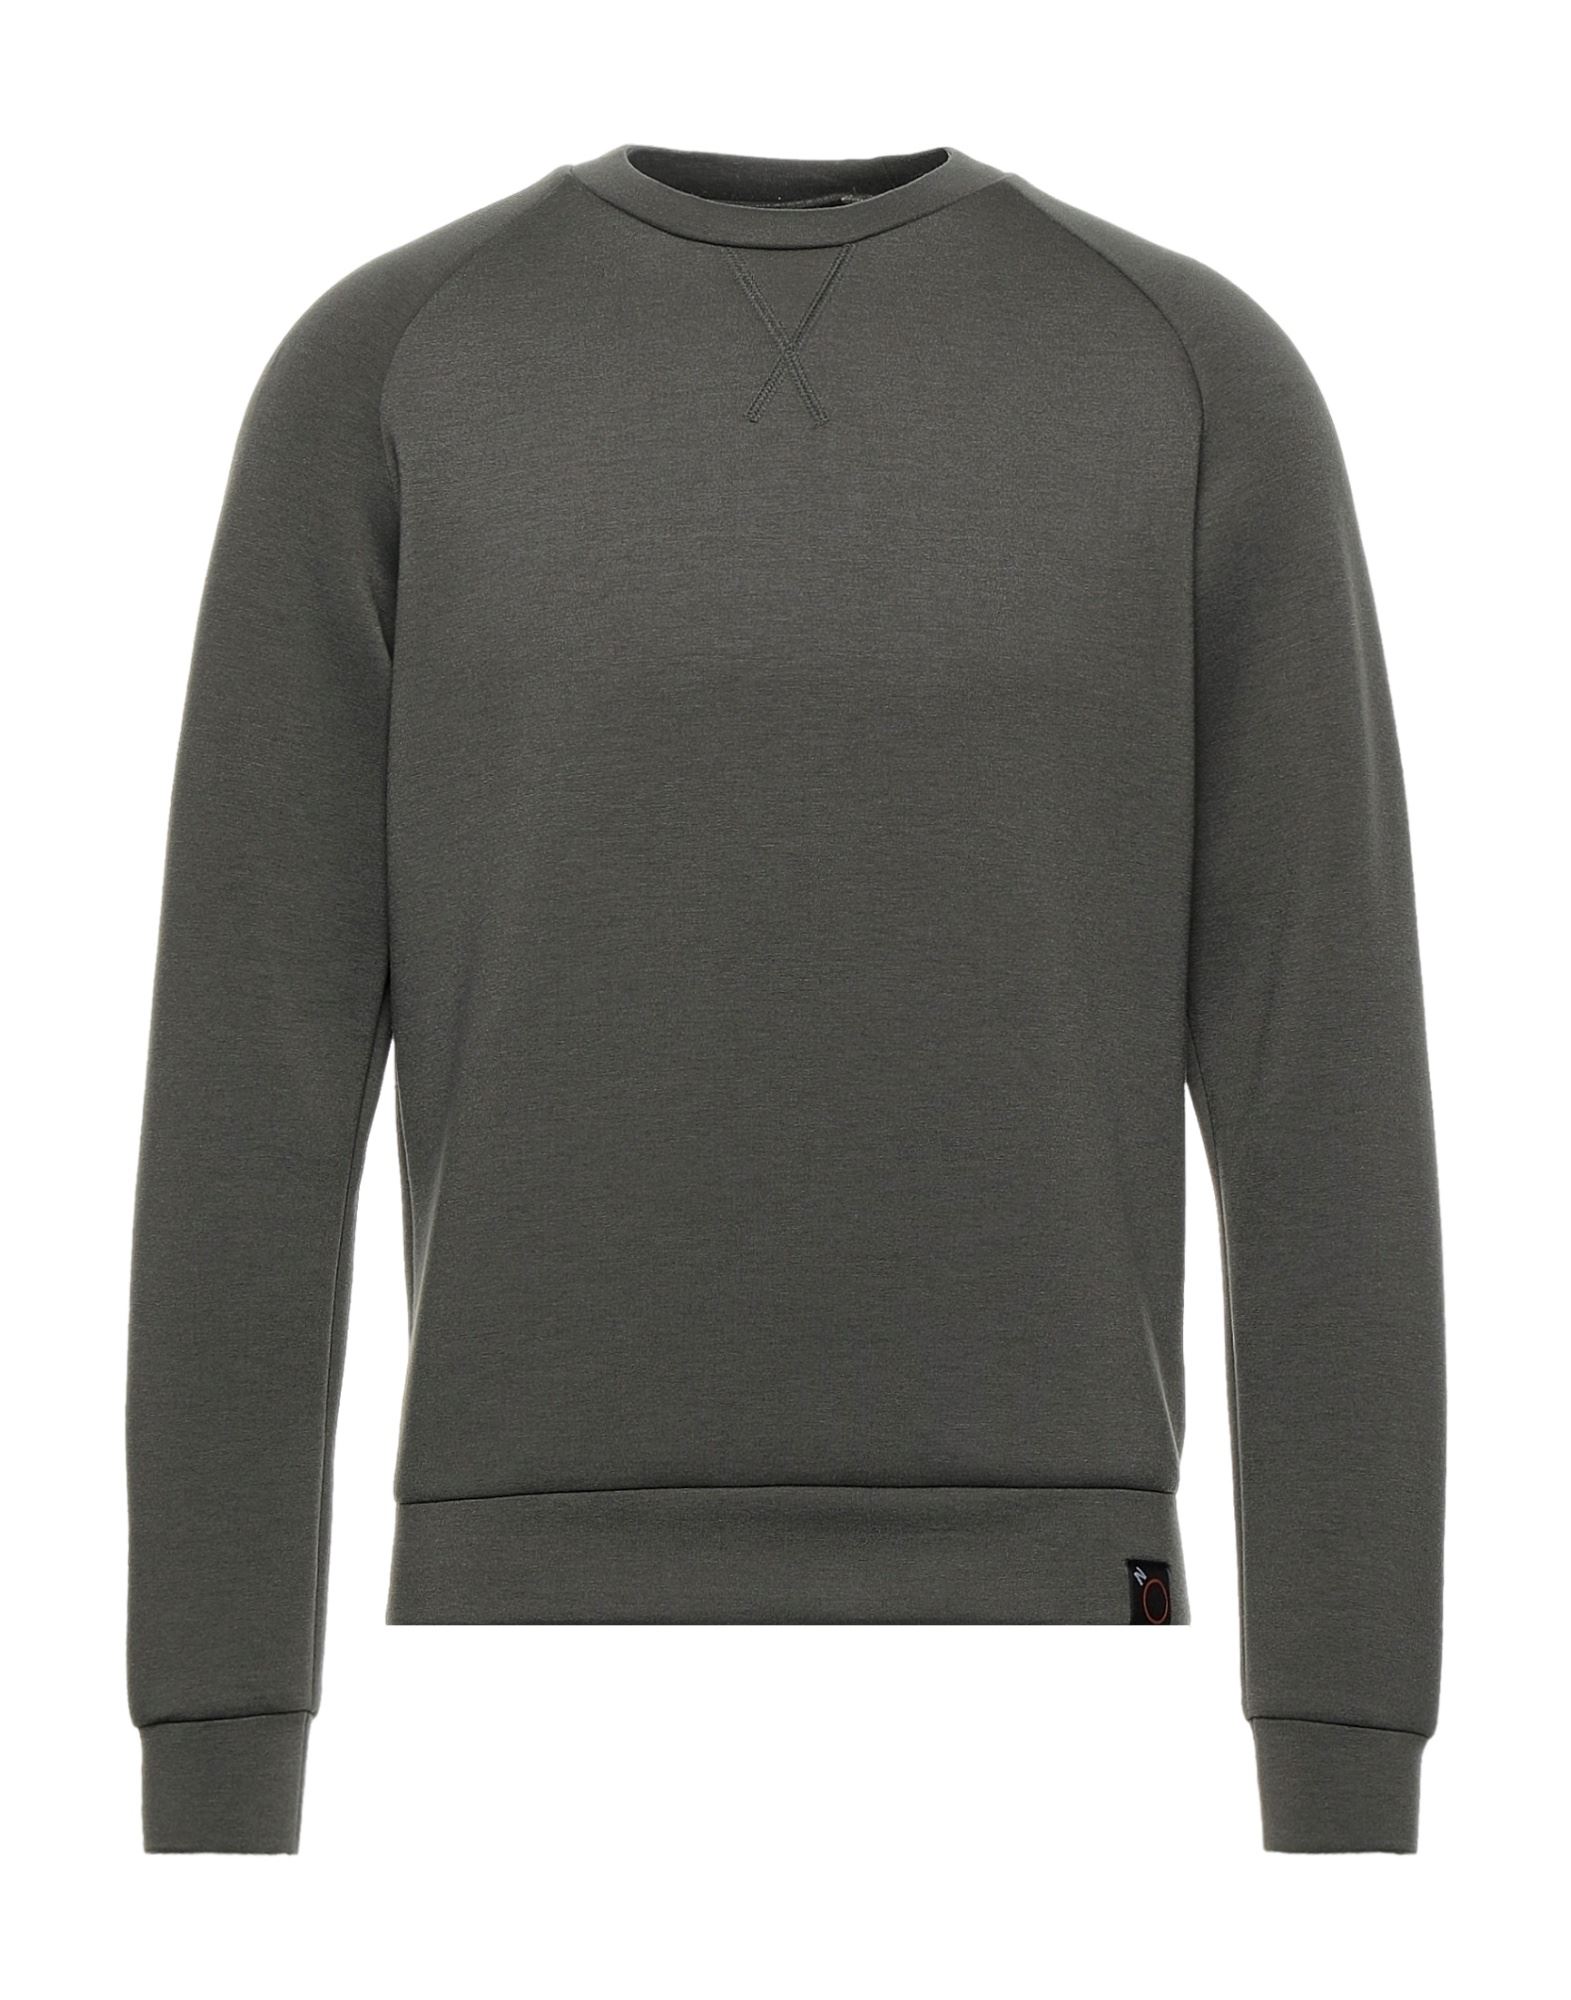 Aspesi Sweatshirts In Grey